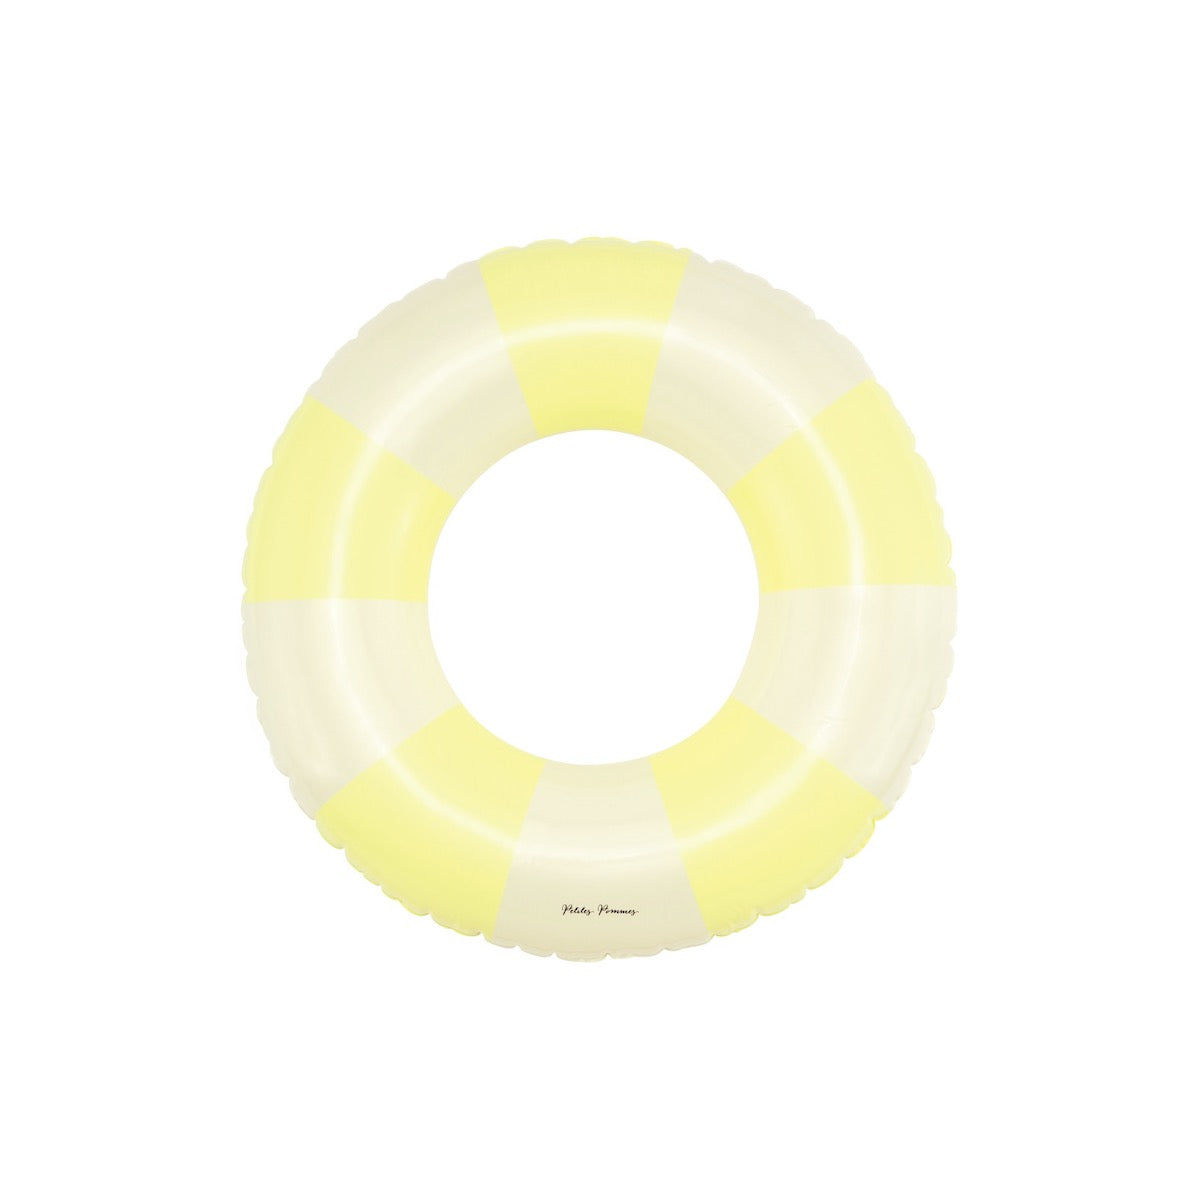 De Petites Pommes Olivia zwemband in de kleur Pastel yellow (geel) is een opblaasbare zwemband met een diameter van 45cm. Deze zwemband heeft een leuk en kleurrijk ontwerp in een streep design. VanZus